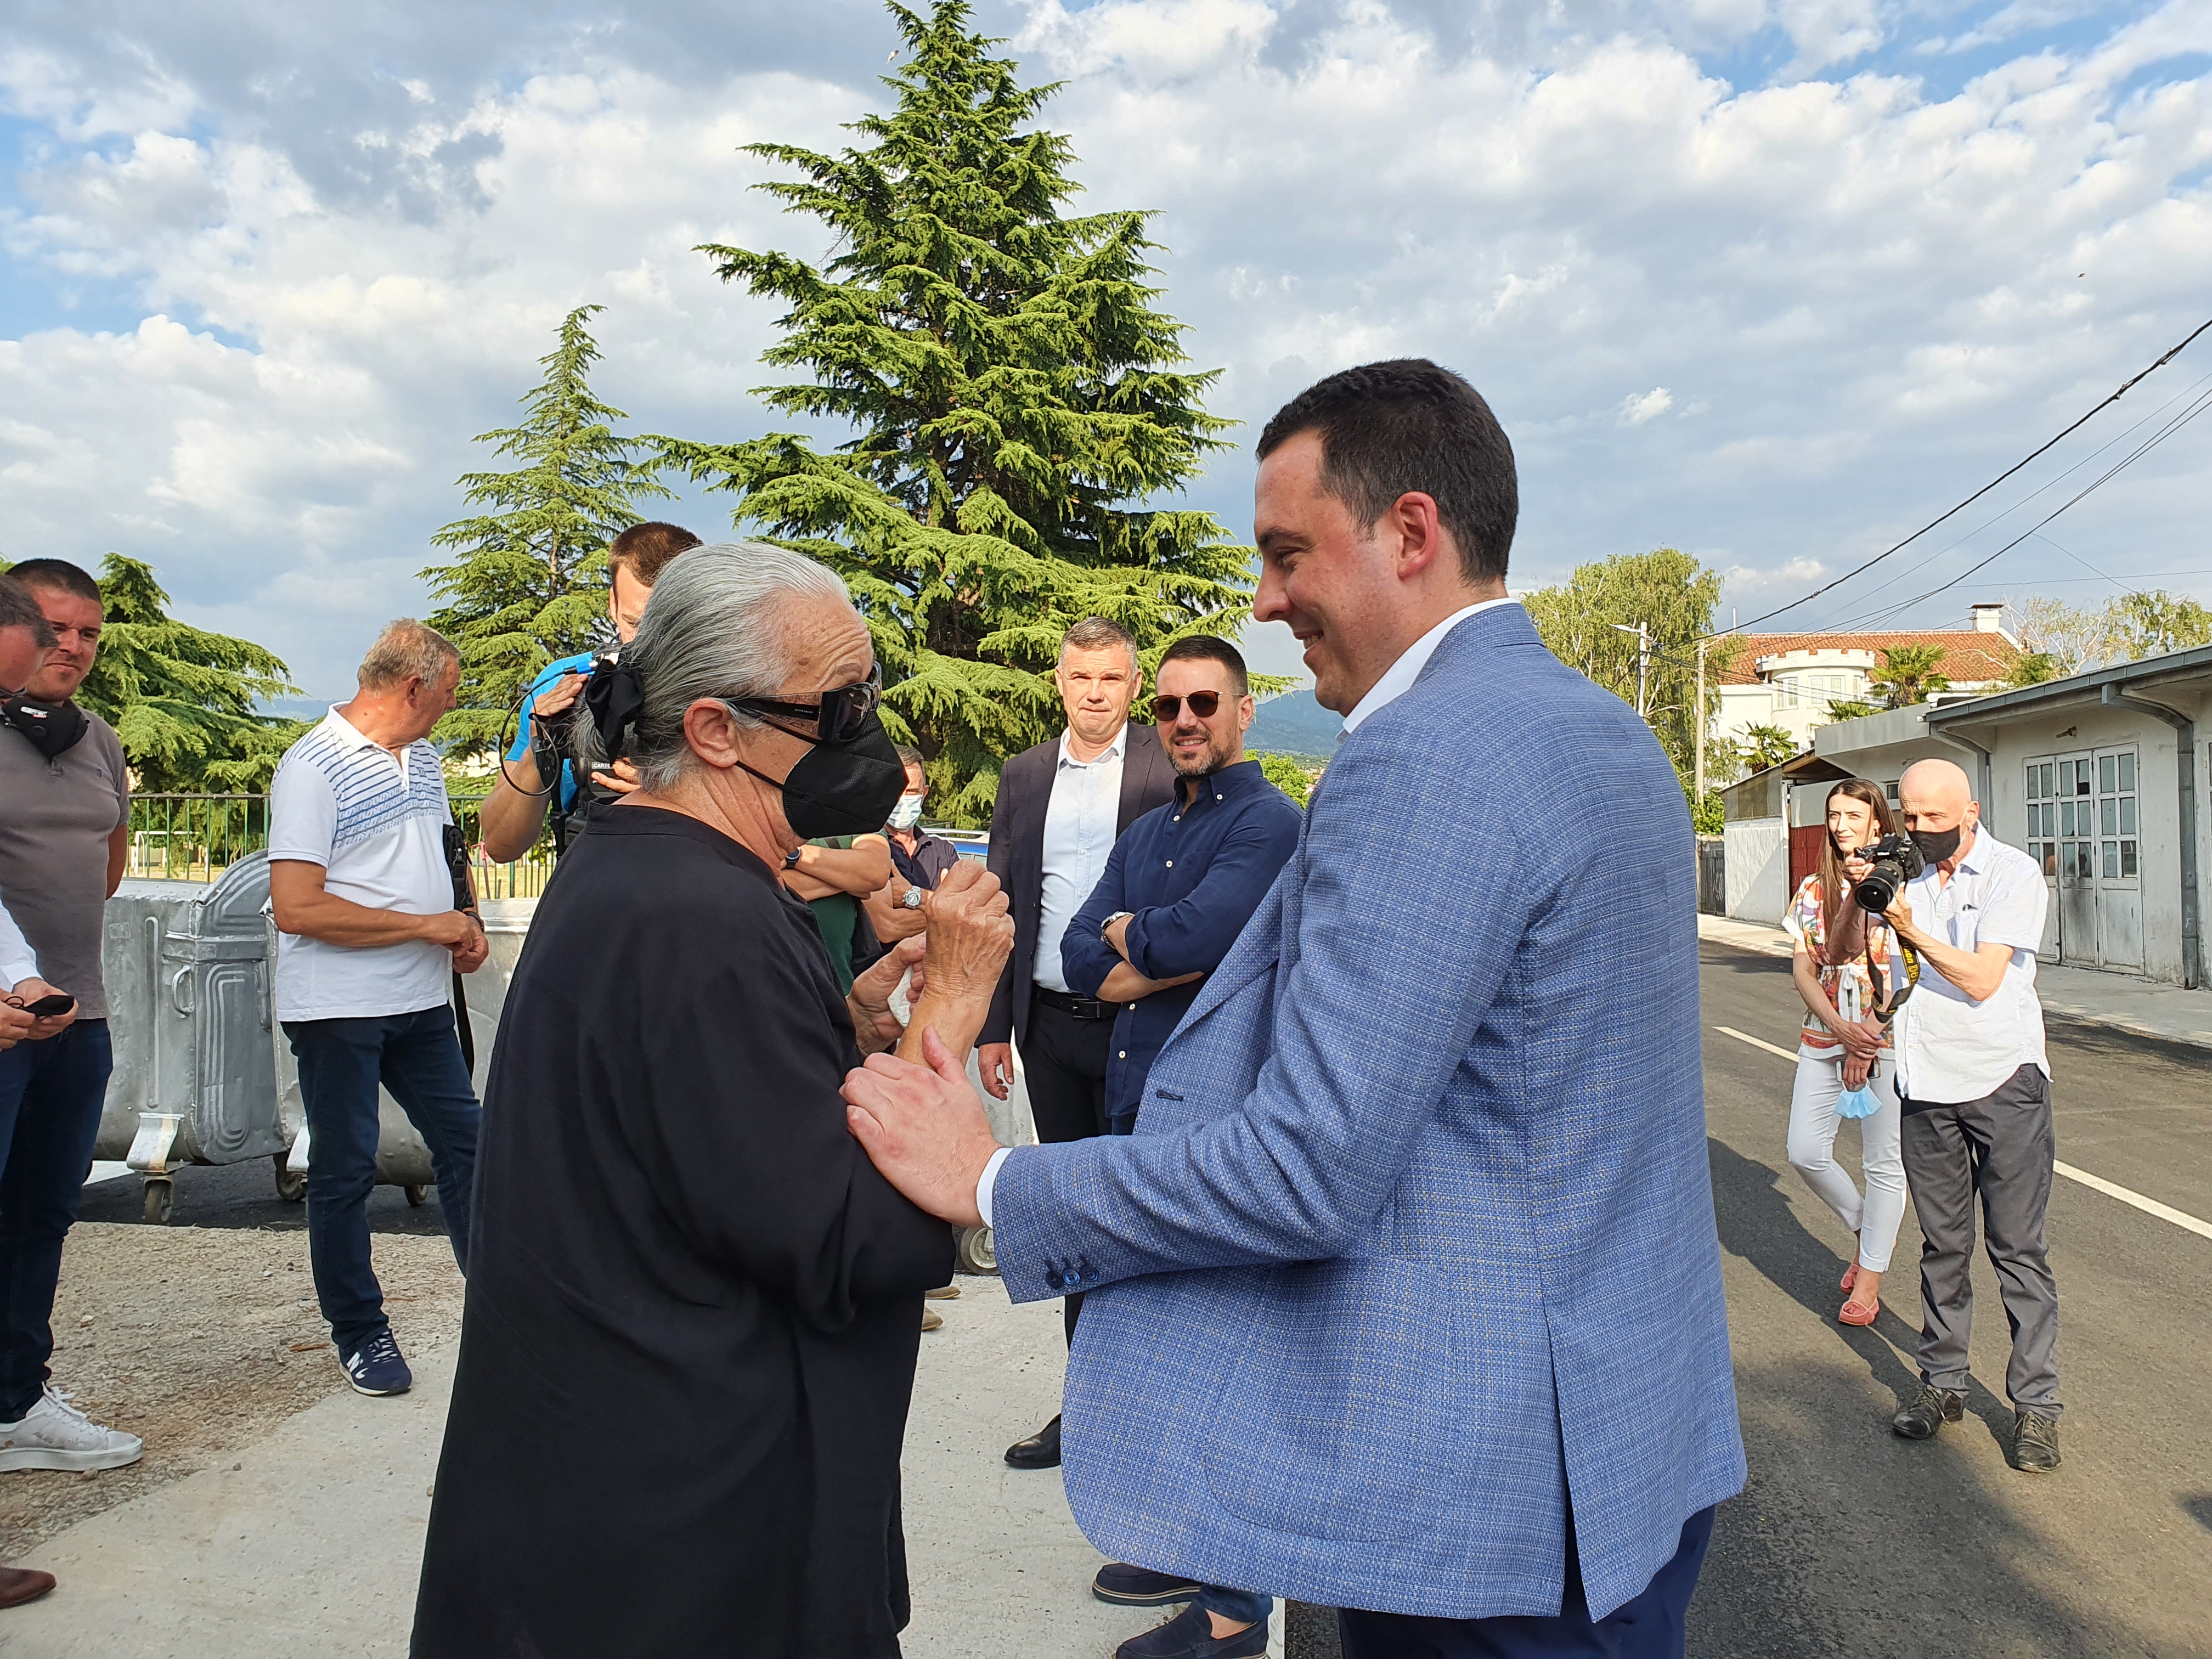 Završena I faza rekonstrukcije najprometnije ulice u Maslinama; Vuković najavio nova ulaganja